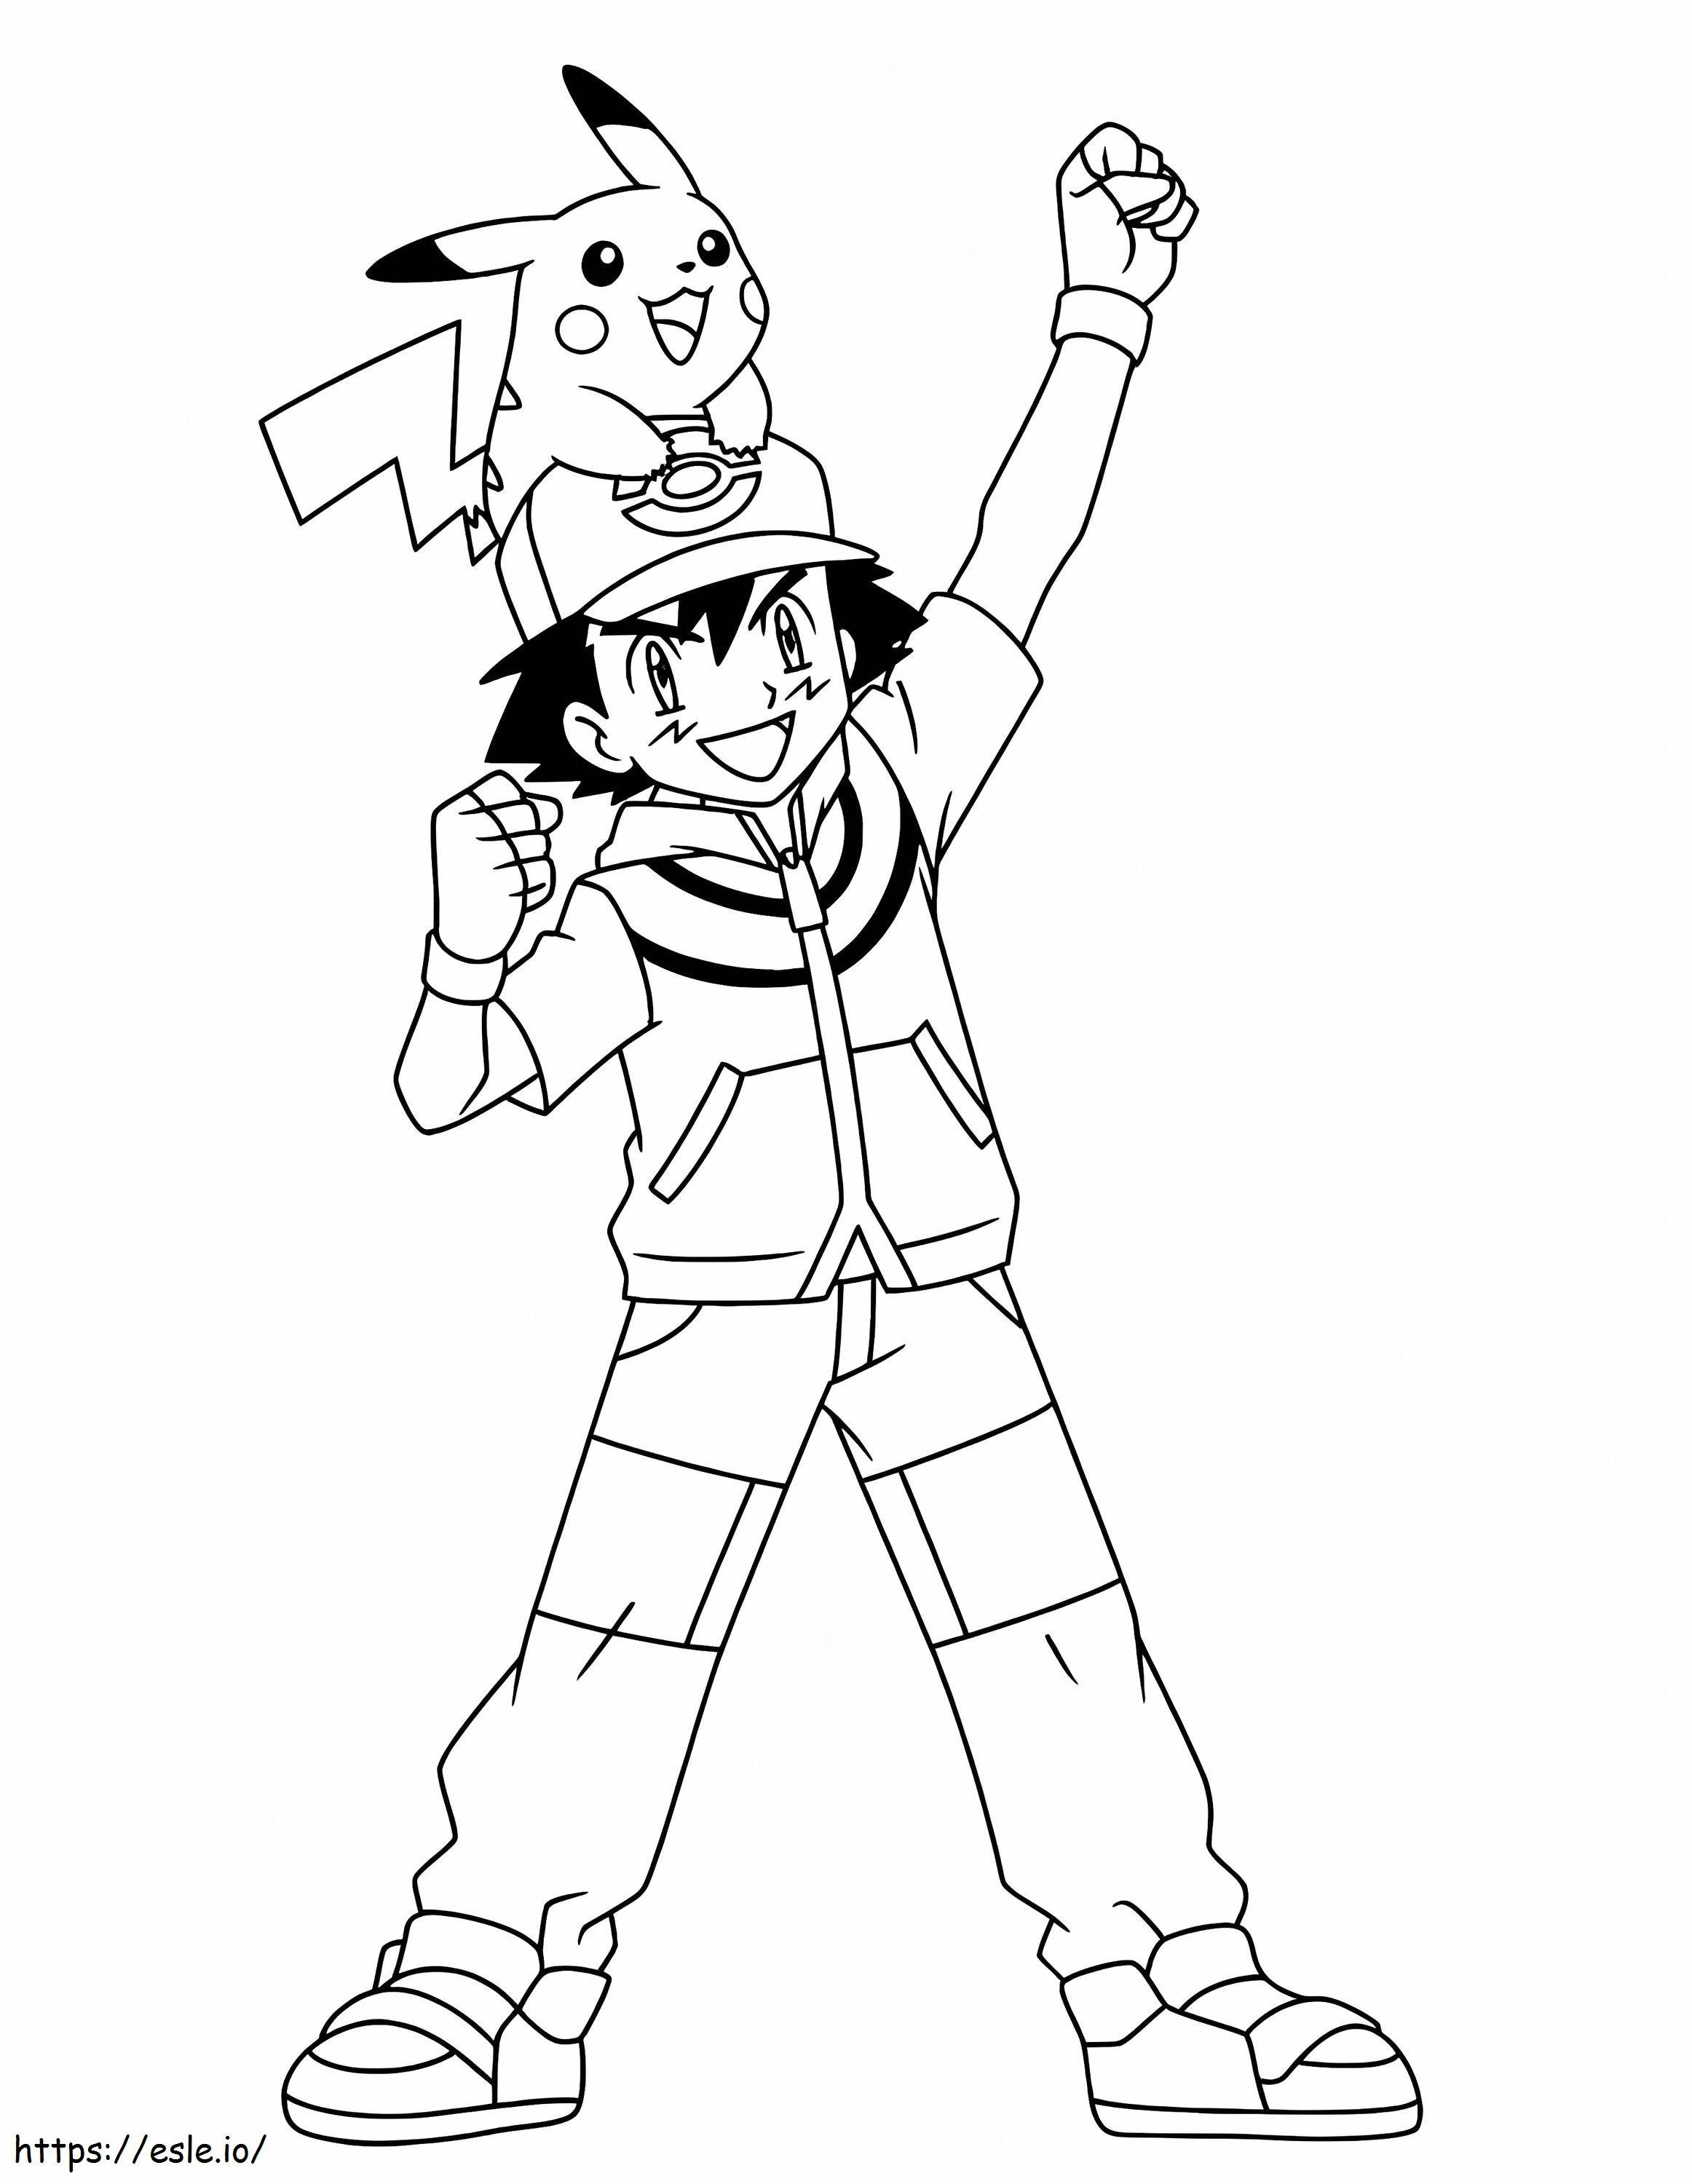 Ash și Pikachu de colorat